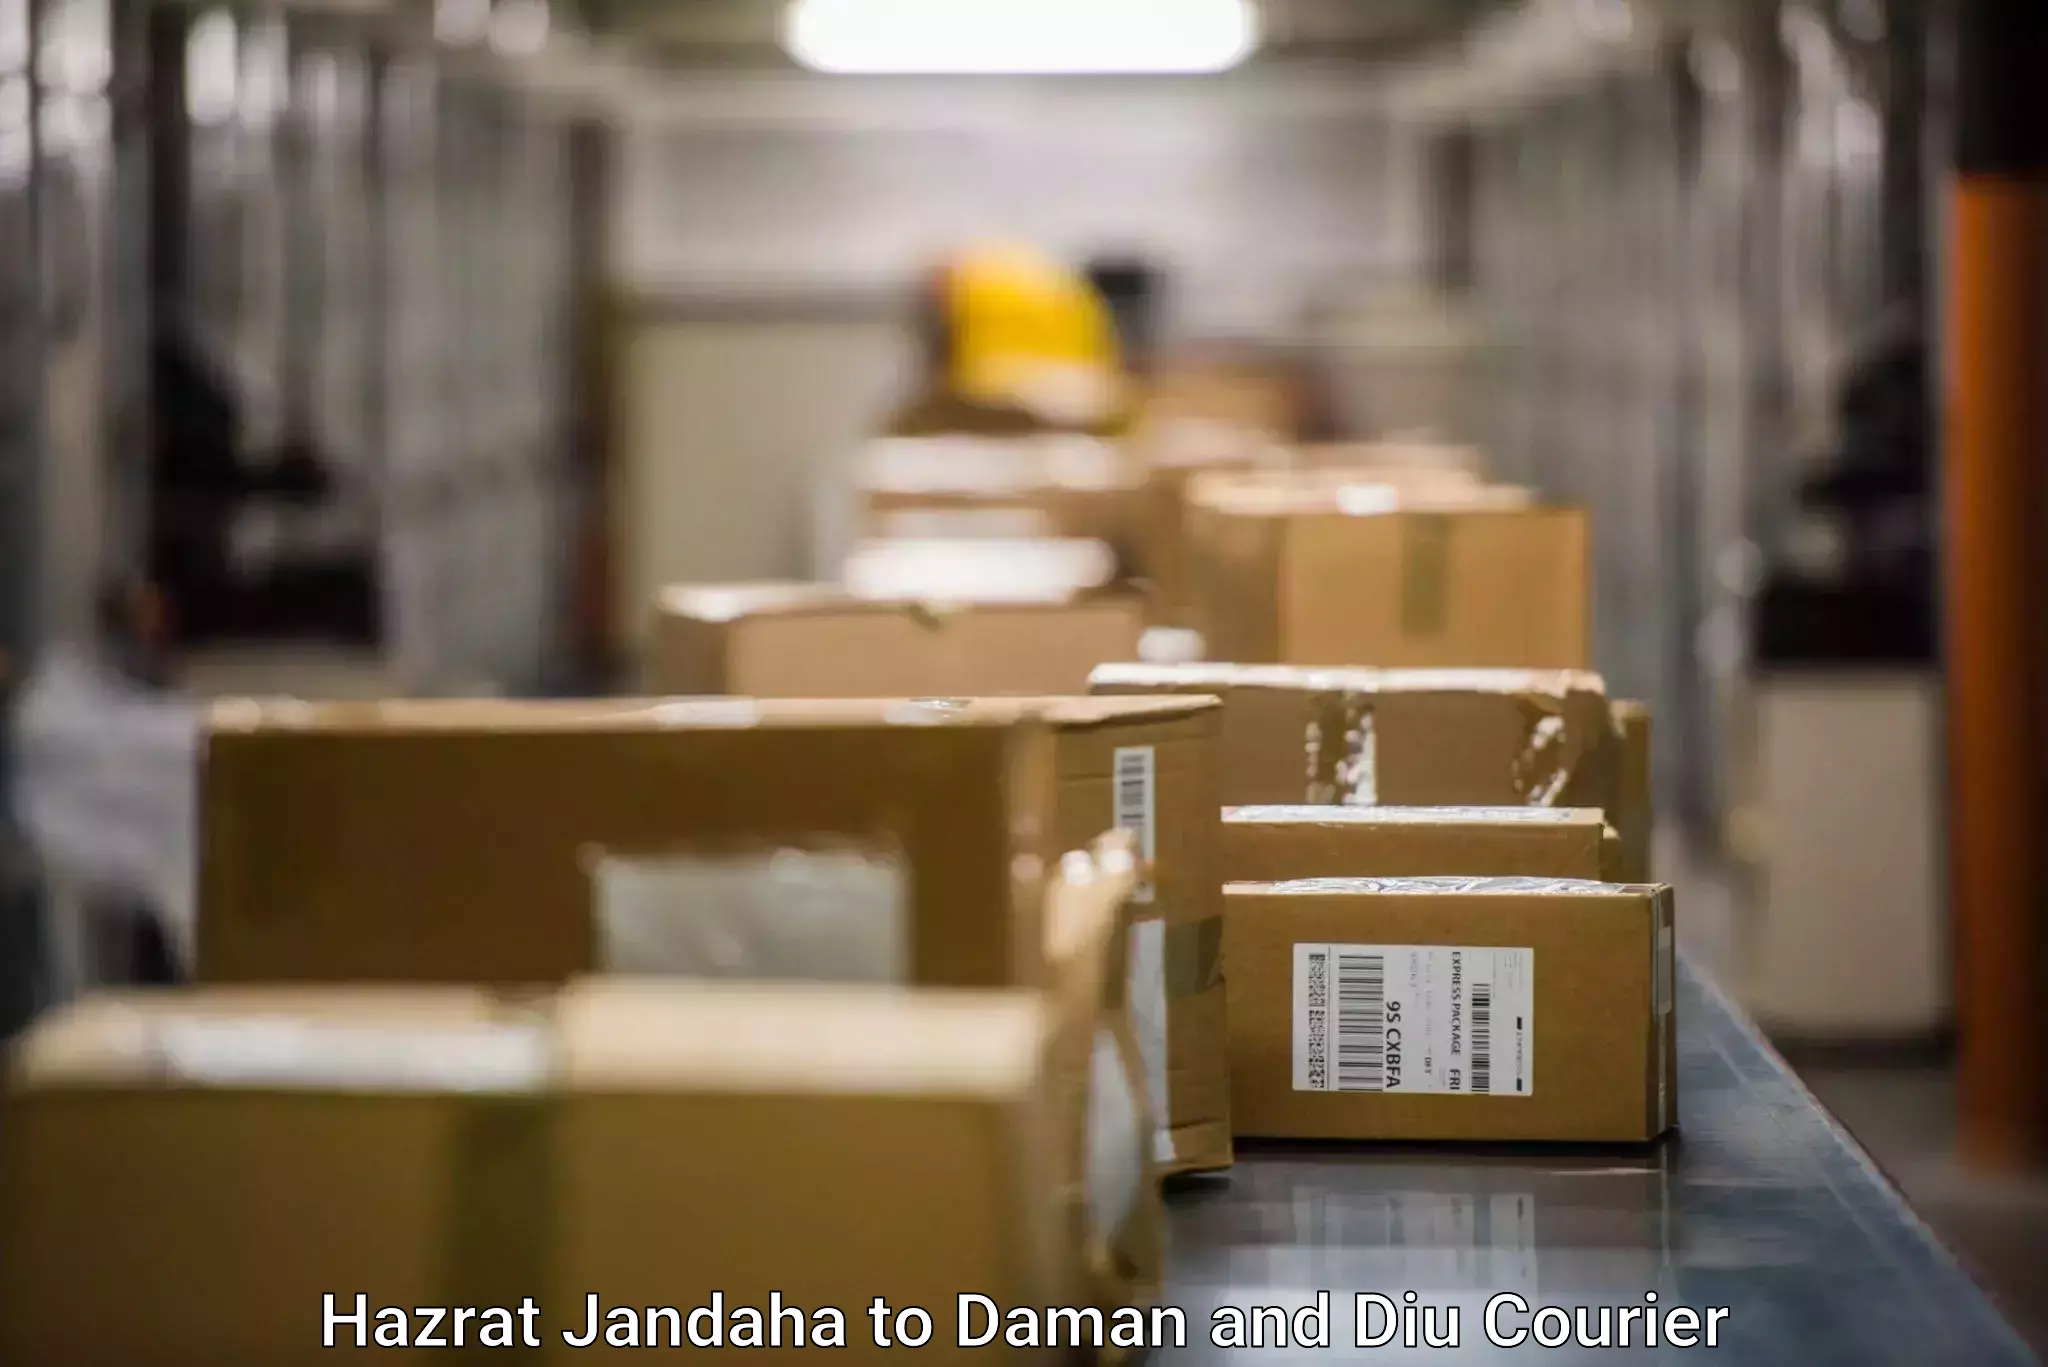 Business shipping needs Hazrat Jandaha to Diu